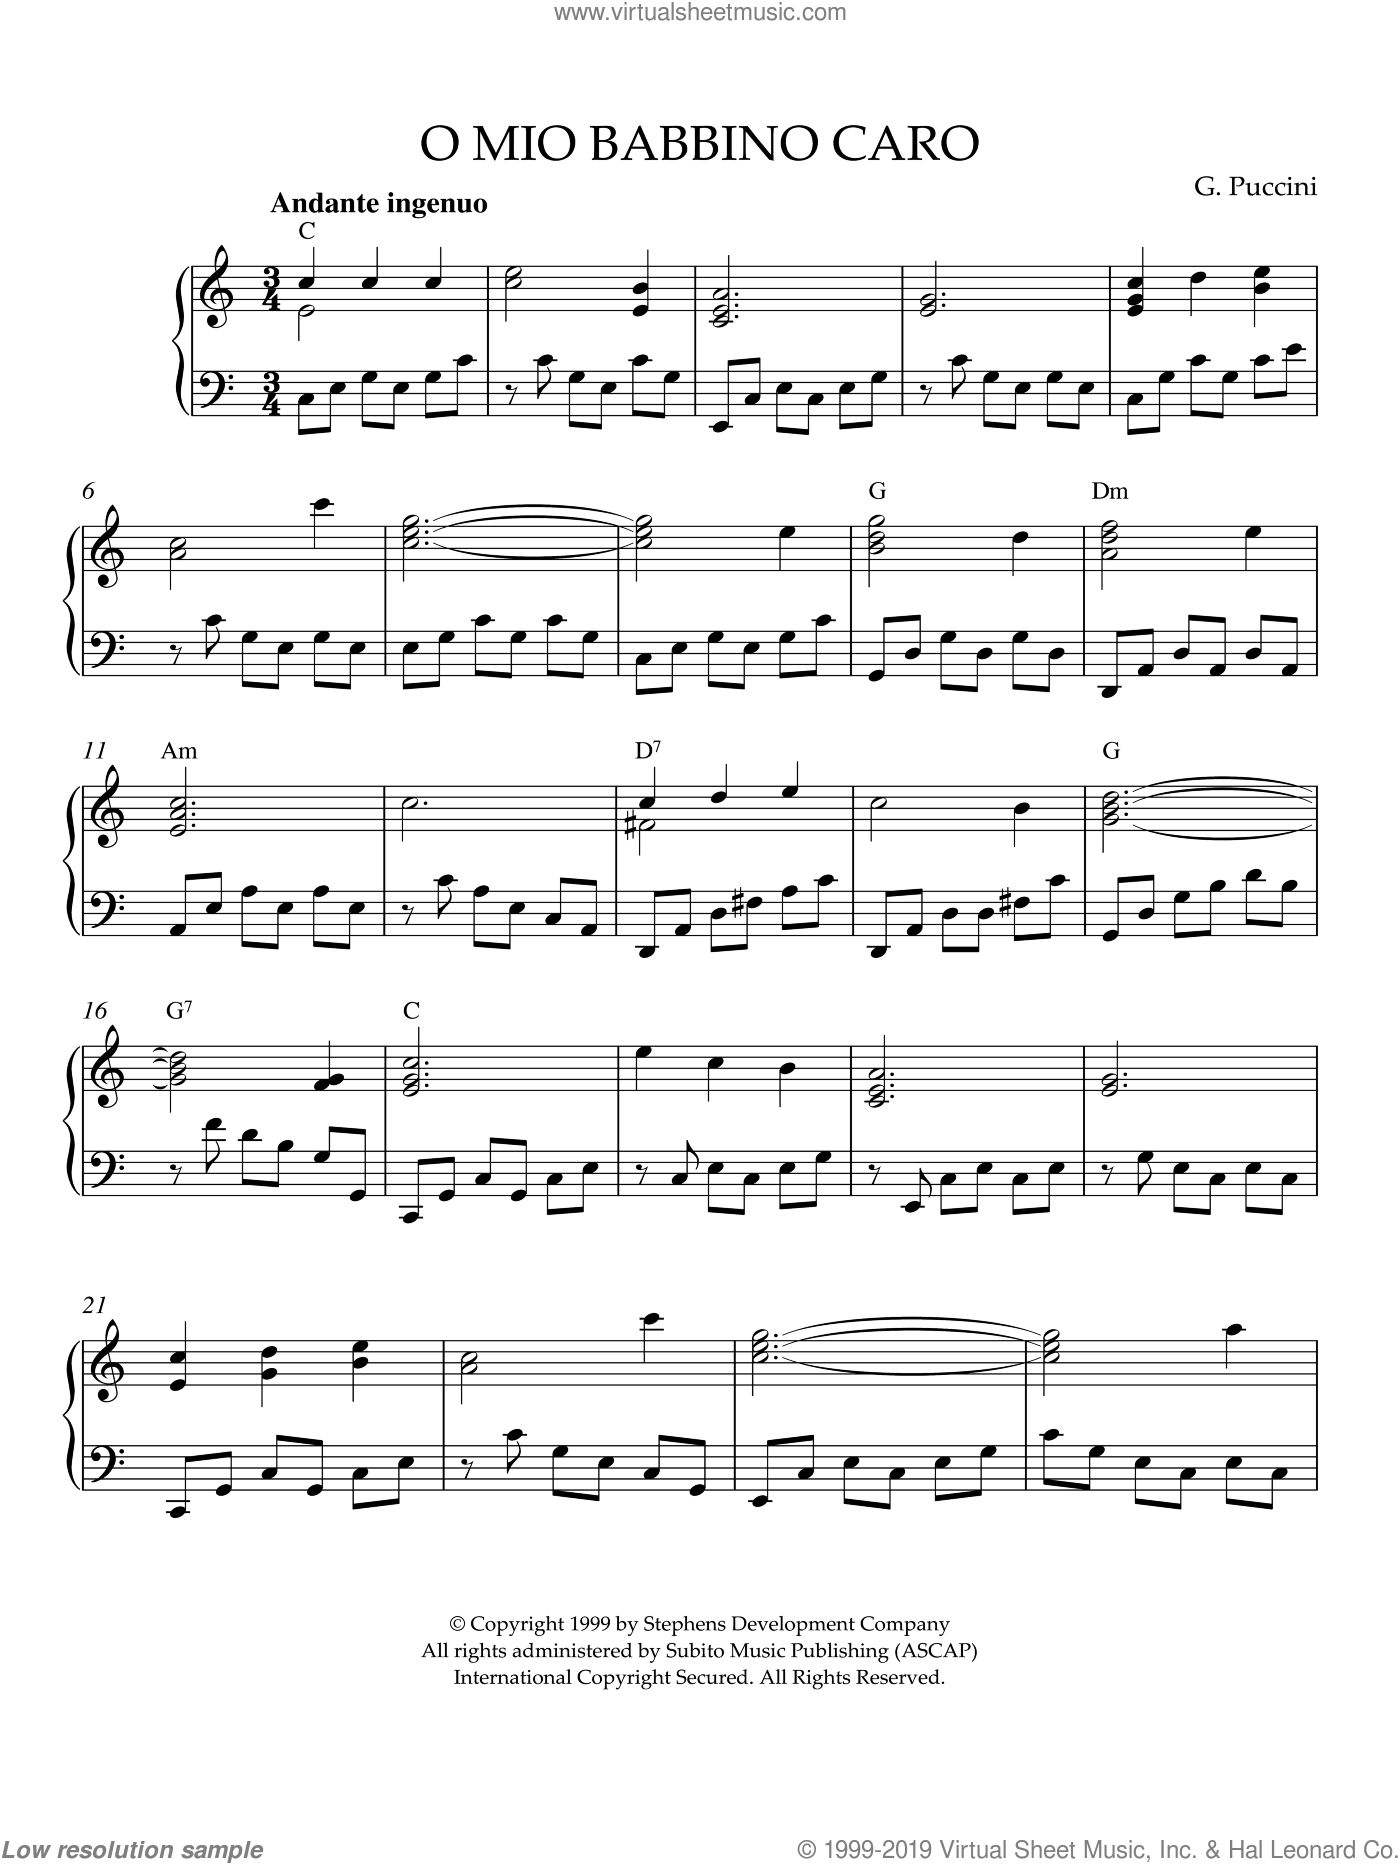 Mio Babbino Caro sheet music for piano solo (PDF)